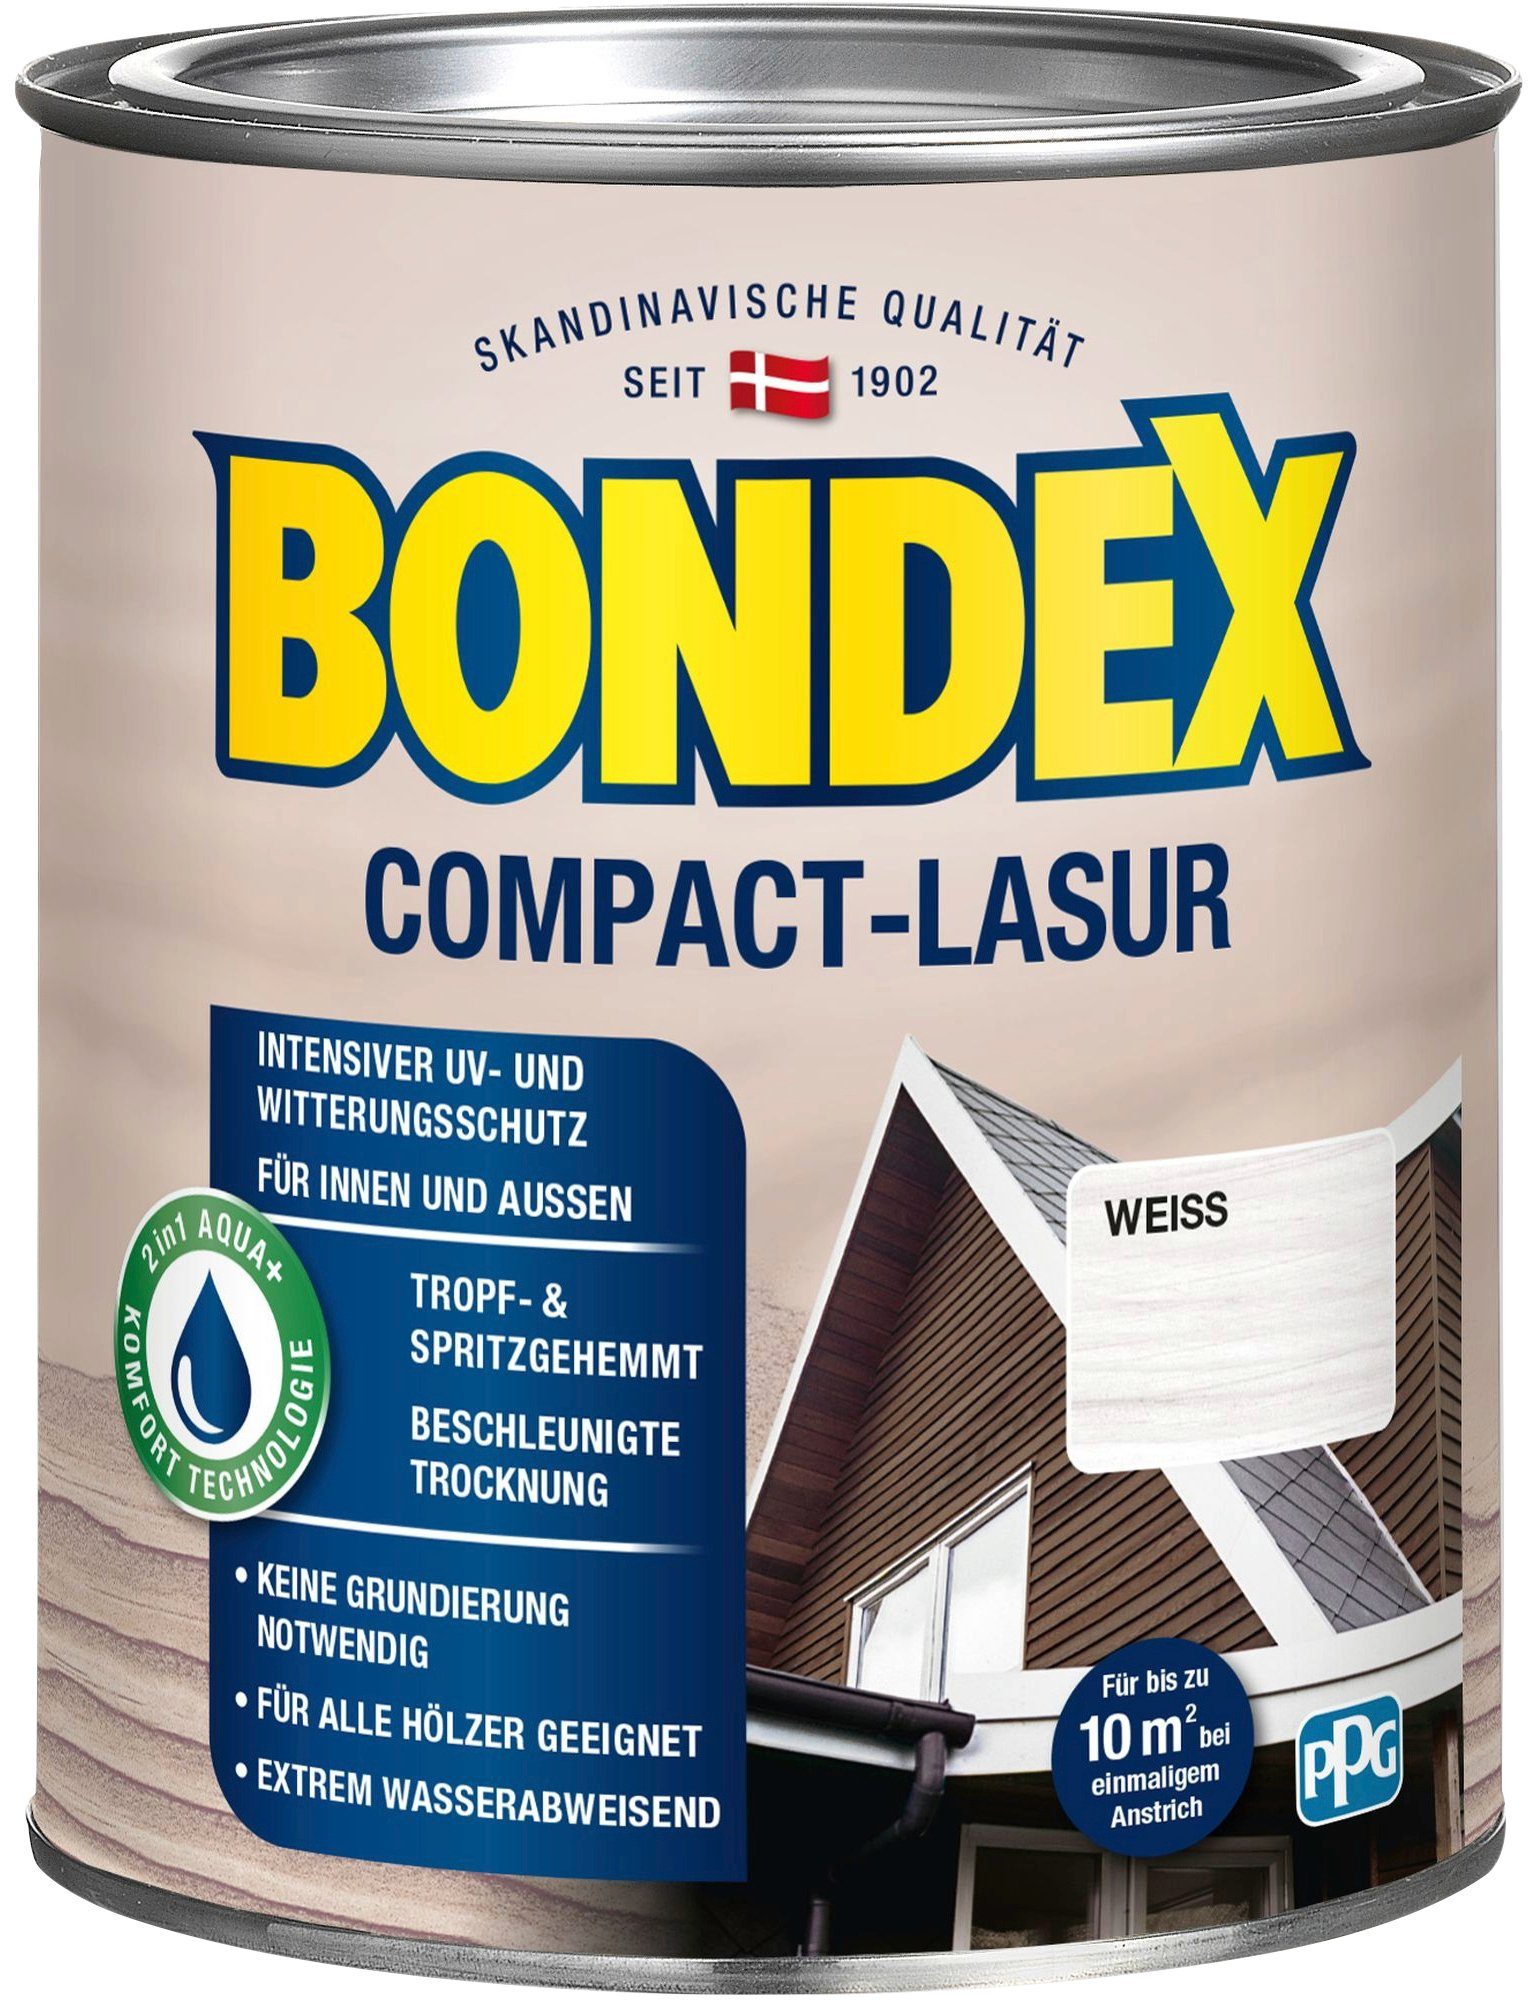 Witterungsschutz, COMPACT-LASUR, UV- intensiver & wasserabweisend Weiss extrem Holzschutzlasur Bondex